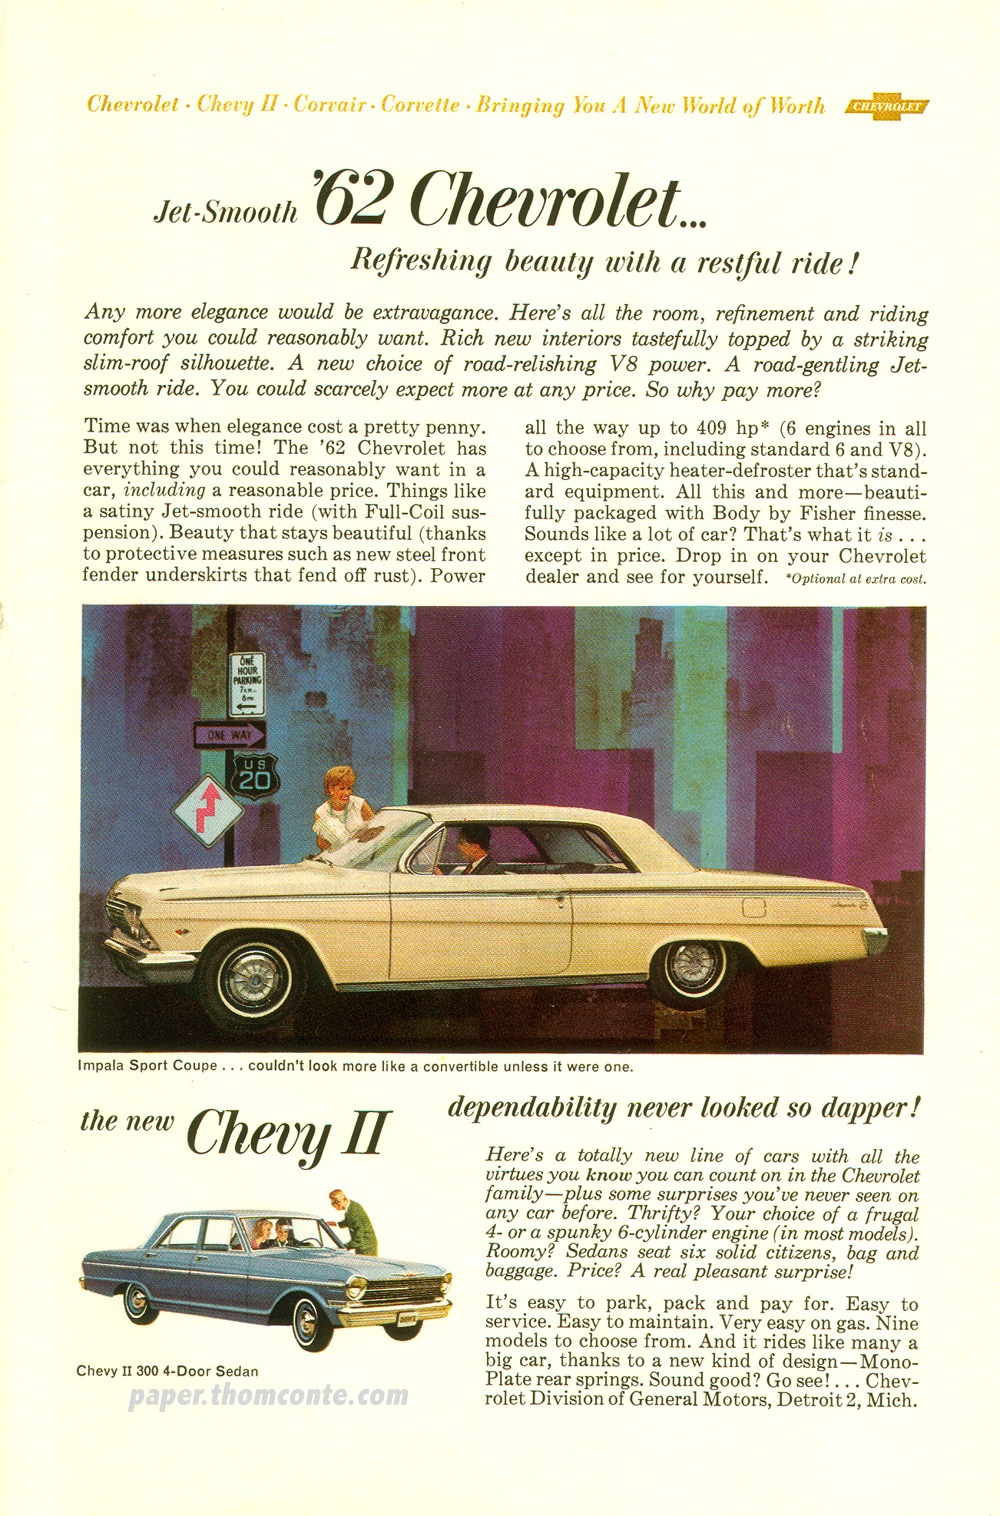 Chevrolet II advertisement